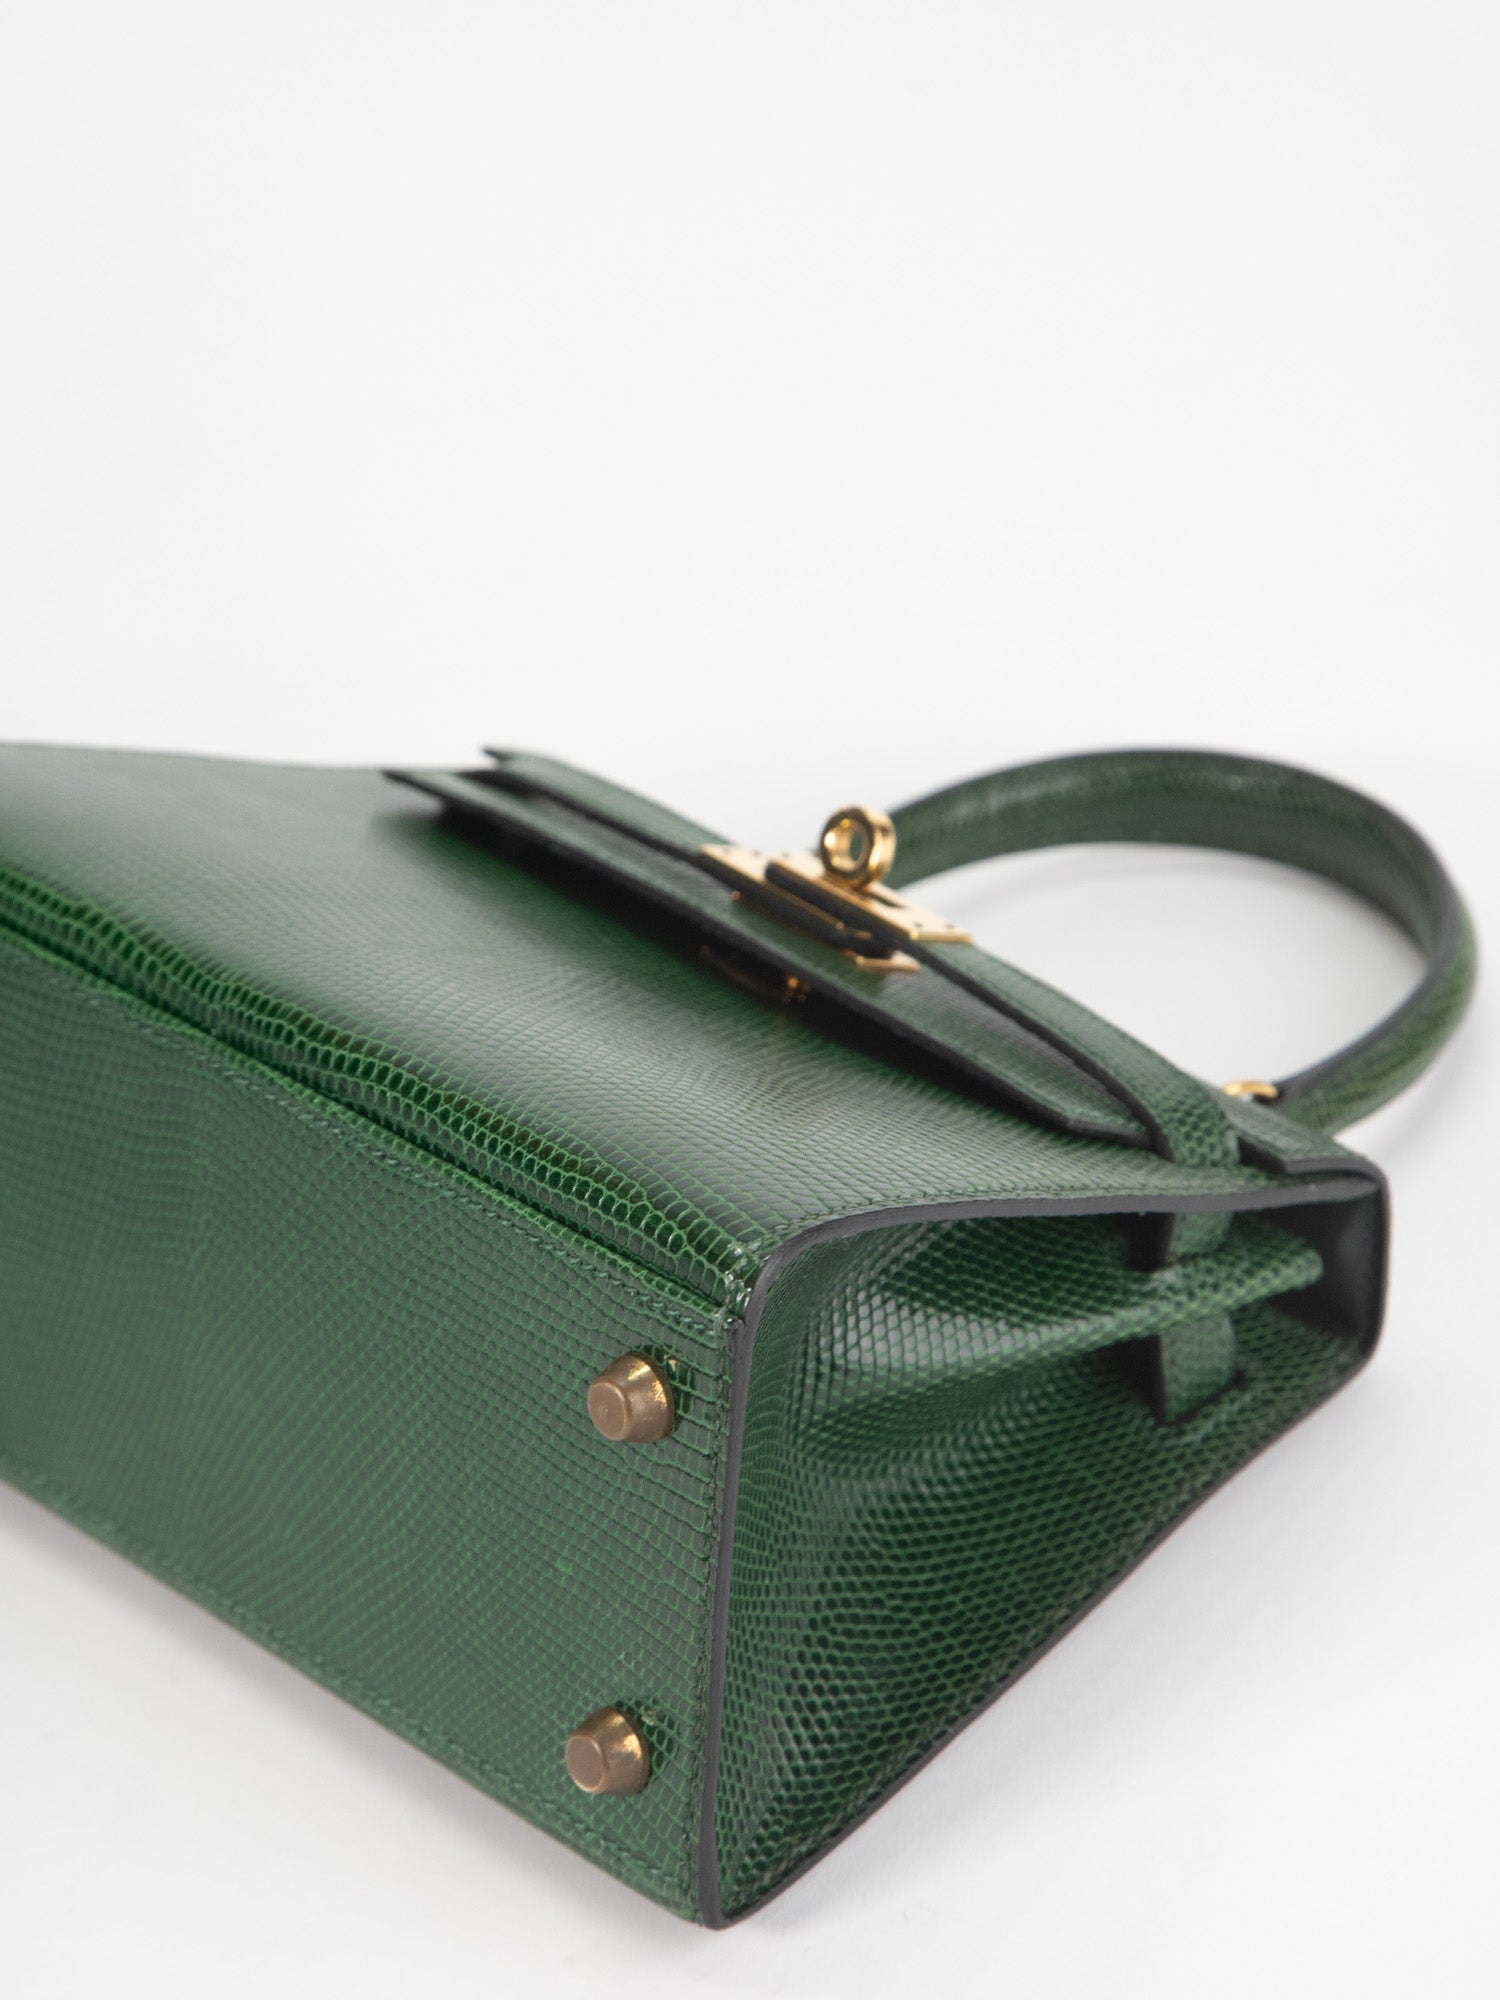 Mini Kelly lizard designer bag#hermesbag #hermes #hermesminikelly #her